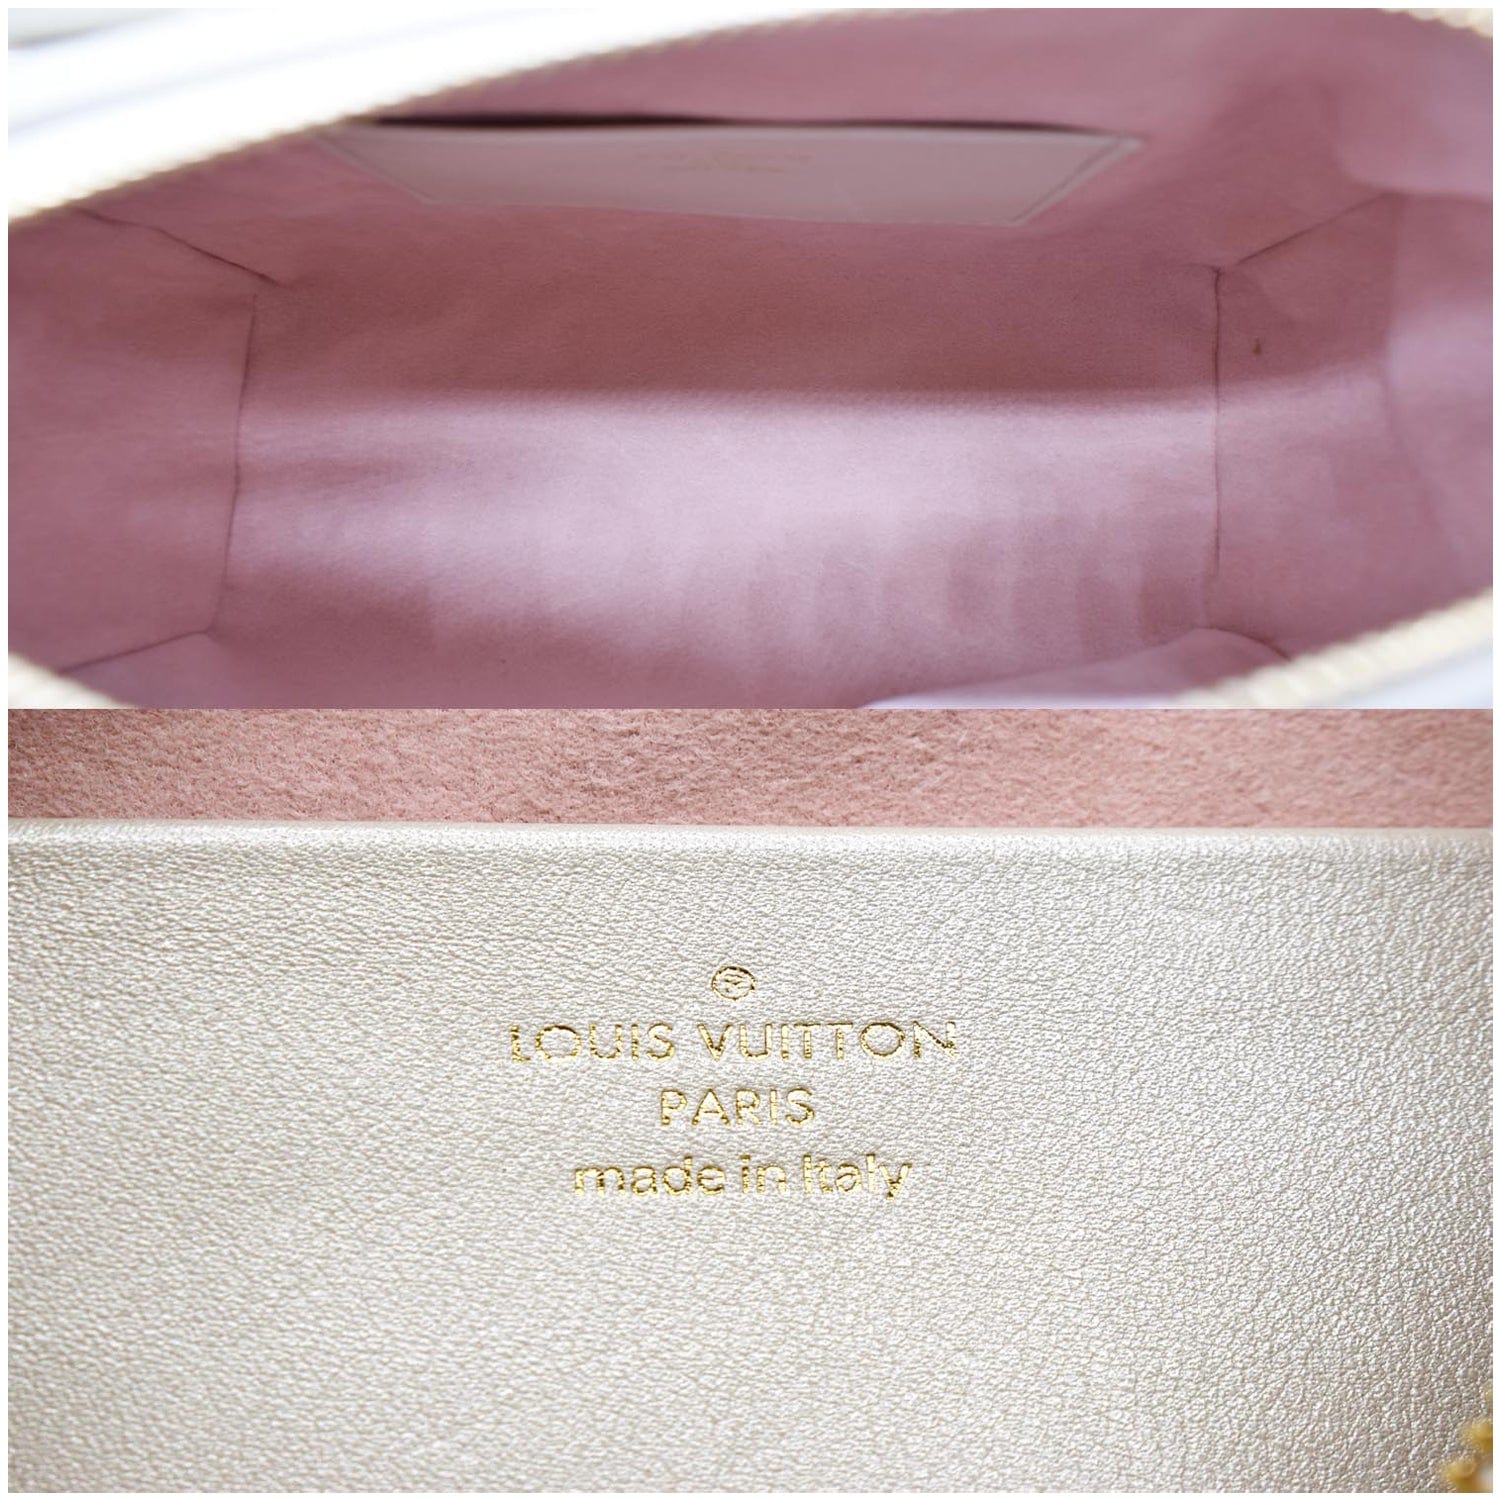 Louis Vuitton's Classic Monogram Unleashes its Wild Side - PurseBop